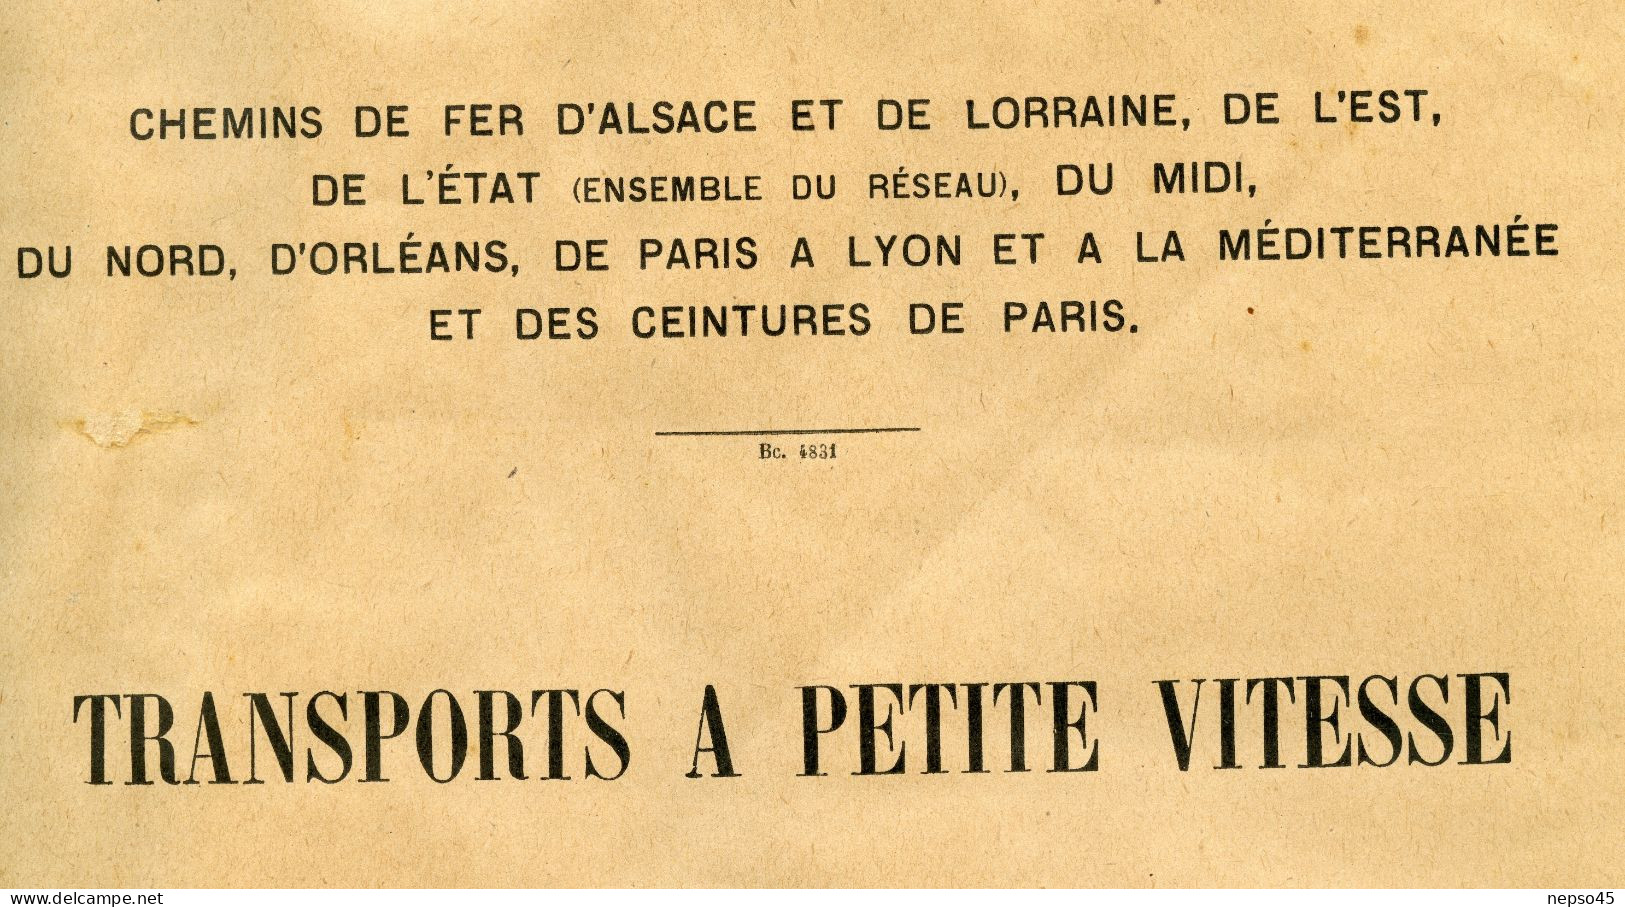 Instructions Générales.1926.Transport à Petite Vitesse.Chemins De Fer.Alsace-Lorraine.de L'Est.d'Etat.du Midi.du No - Eisenbahnverkehr